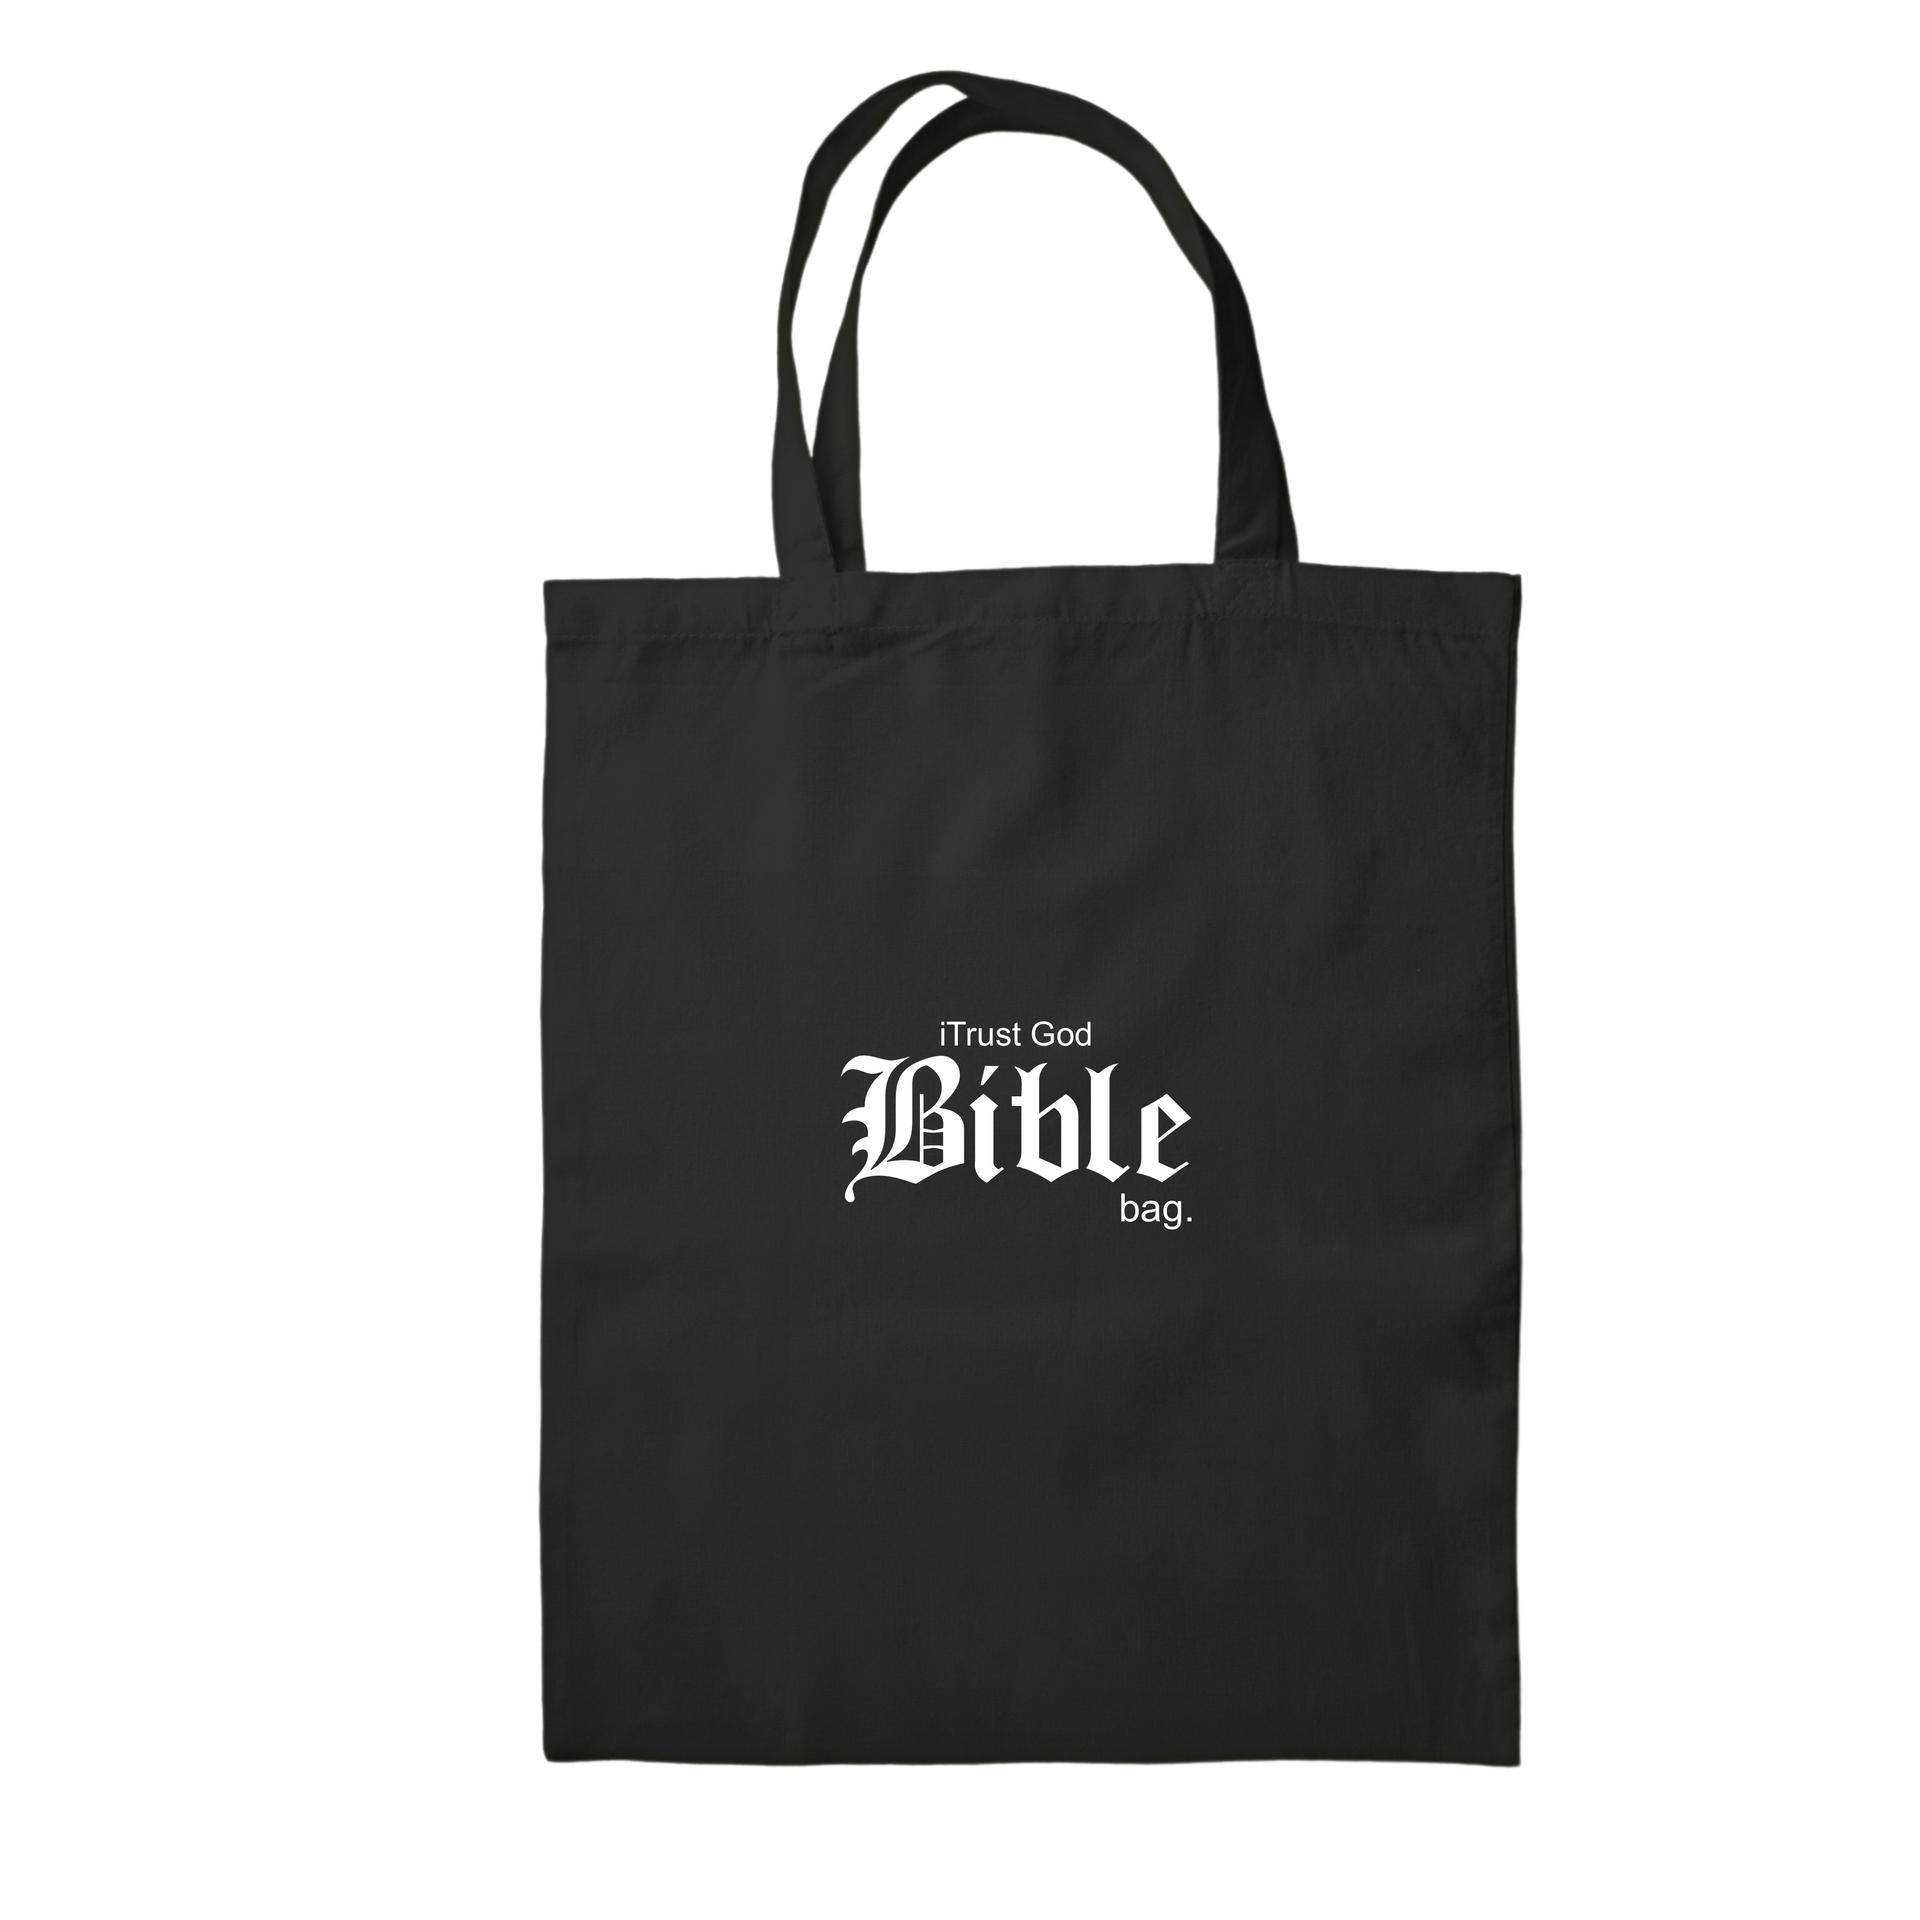 The Bible Bag